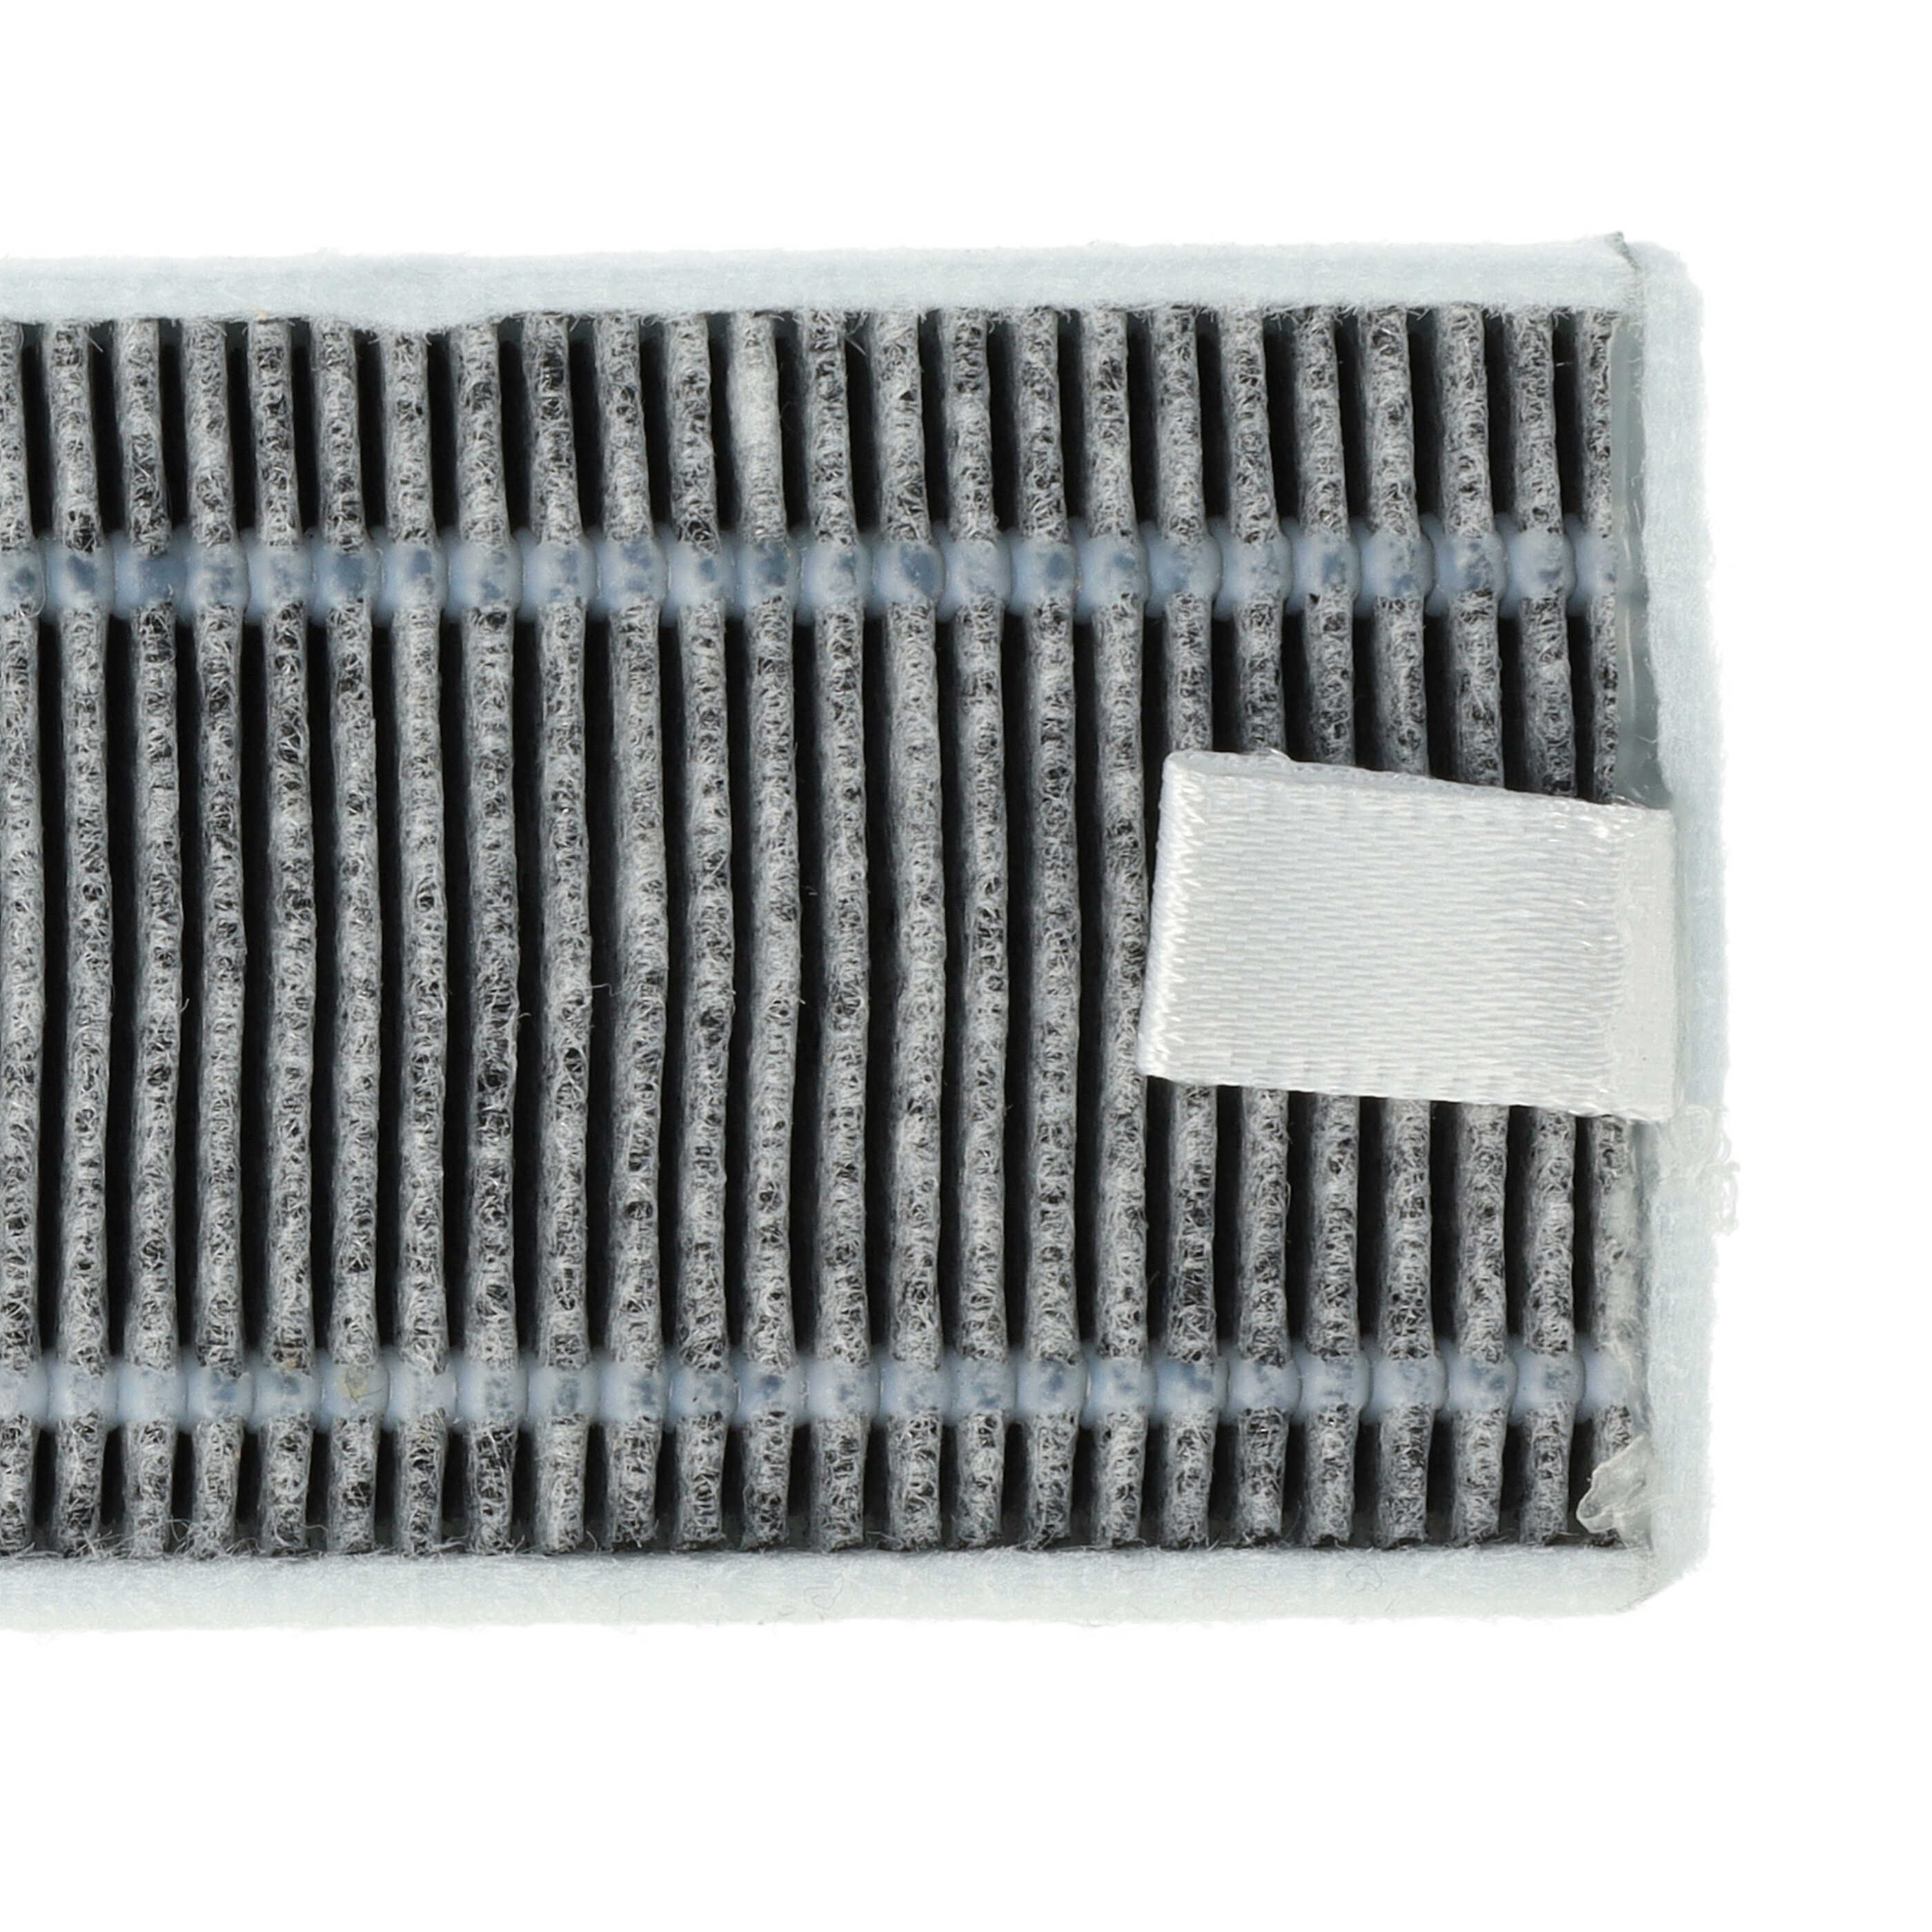 5x Filtres à charbon actif pour robot aspirateur Proscenic, Cecotec, Xiaomi M7 u.a. - 13 x 4 x 1 cm